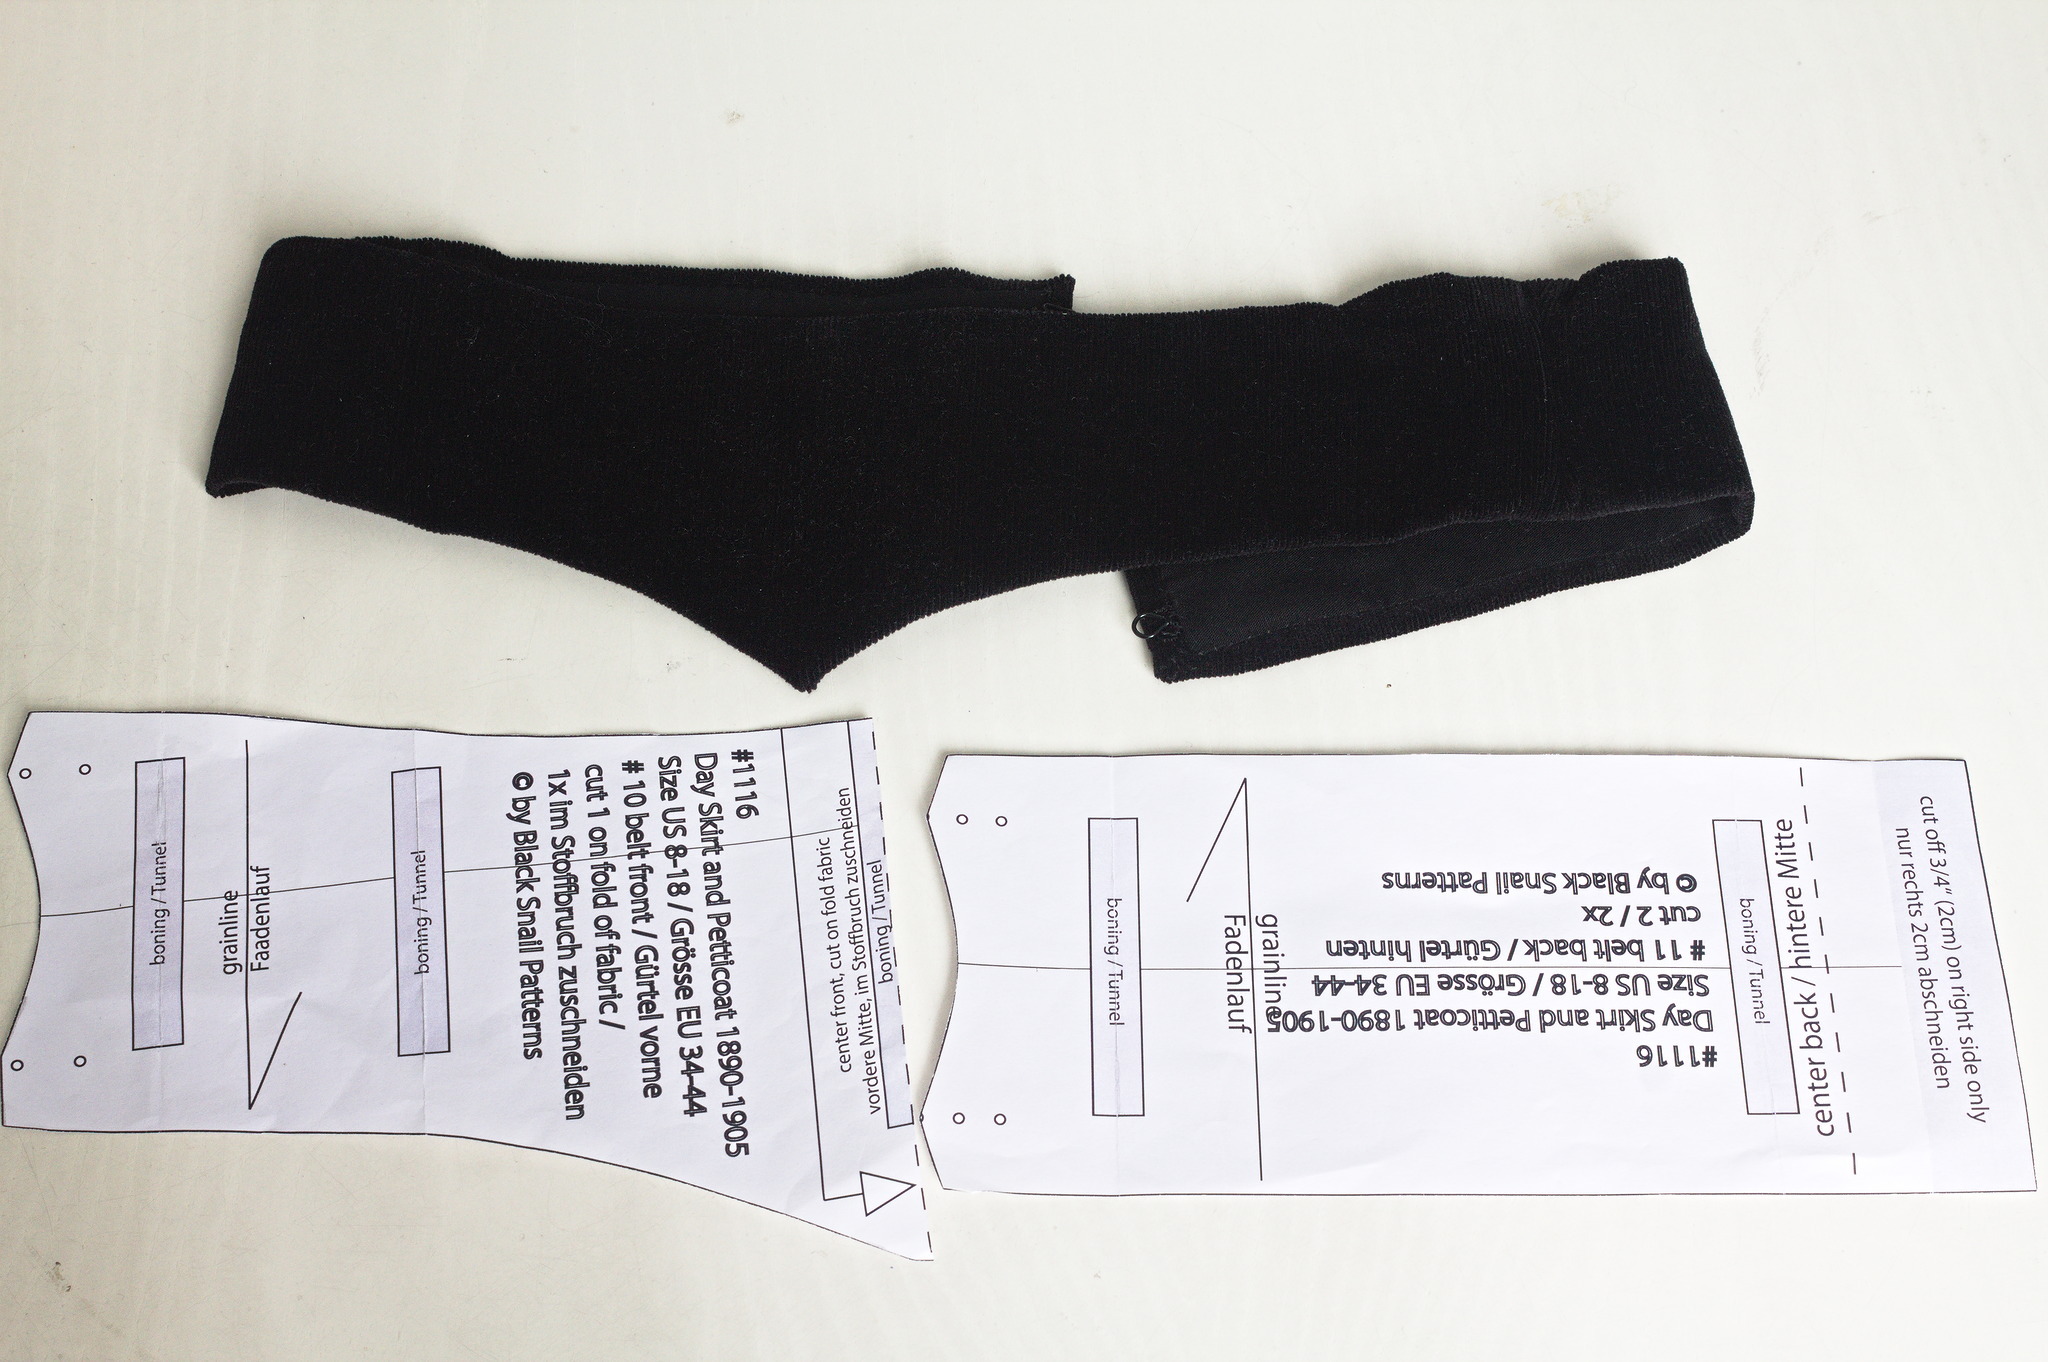 Una cintura di velluto nero, foderata di cotone nero; sui fianchi è alta circa 6 cm, che diventano 9 nel centro davanti. Nella foto si vede anche il cartamodello con cui è stata realizzata